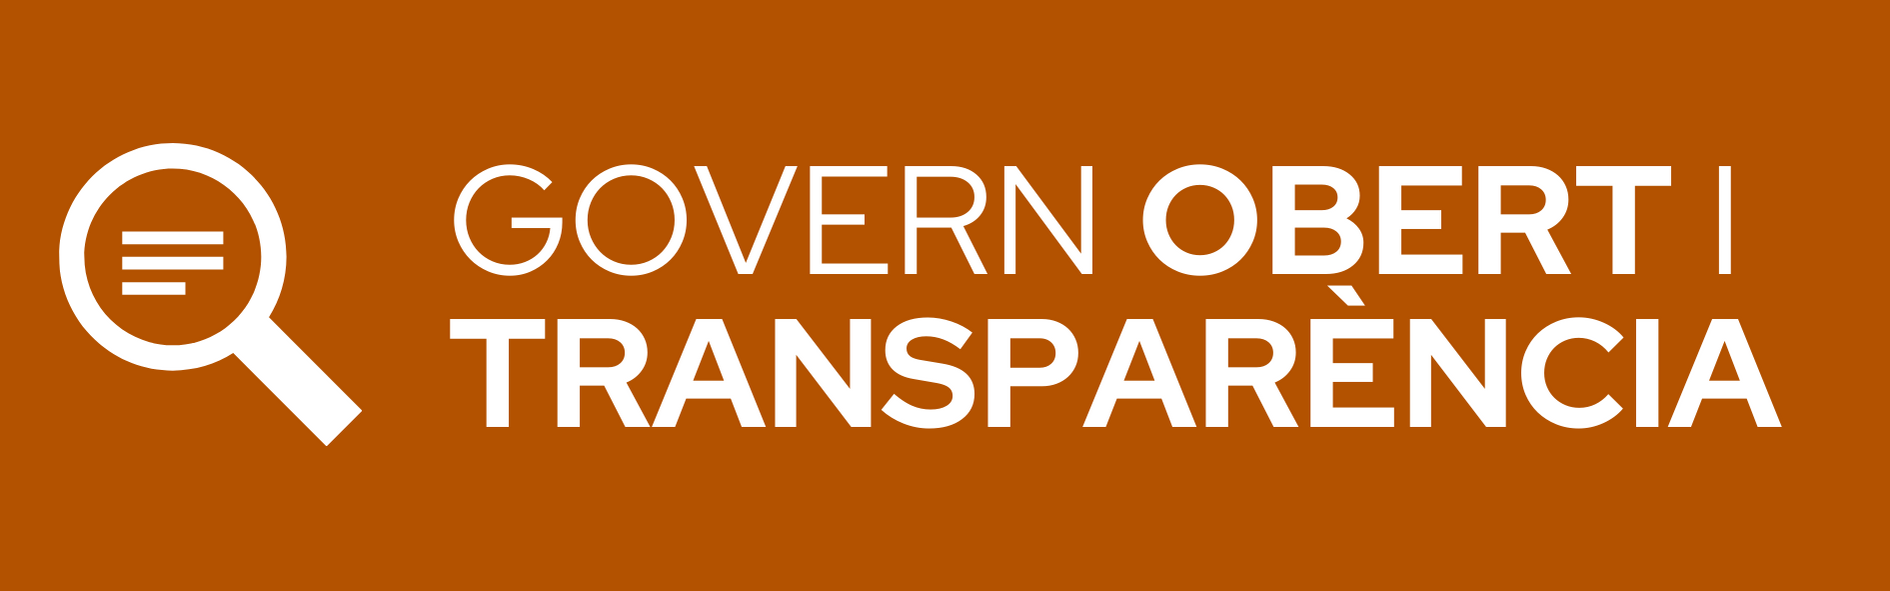 Govern obert i Transparència